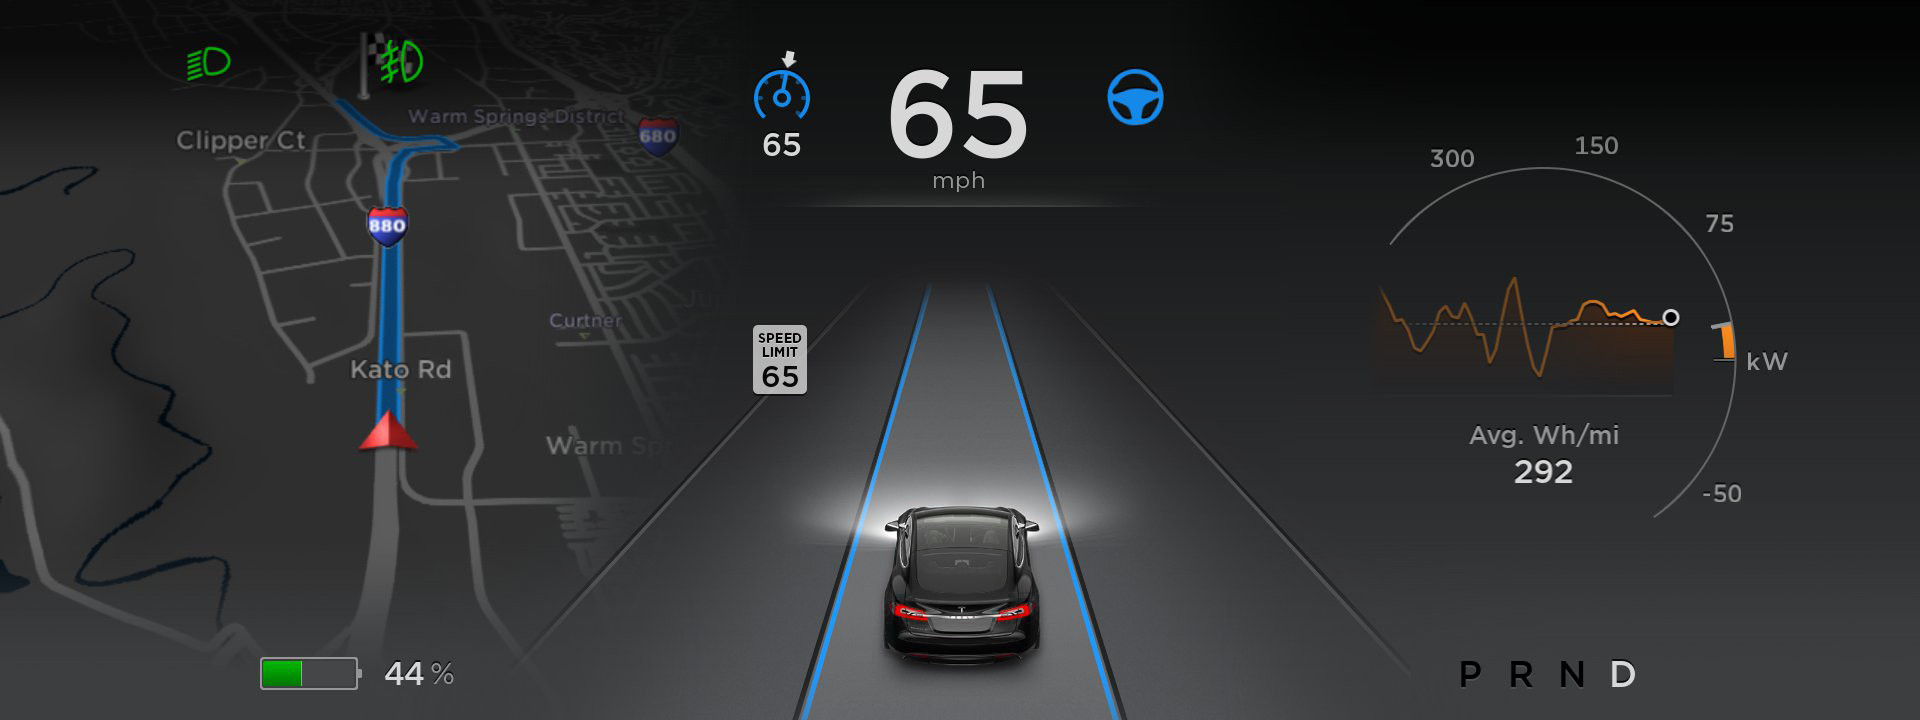 Forvent en rekke oppdateringer til Tesla Autopilot i Software 8.0.